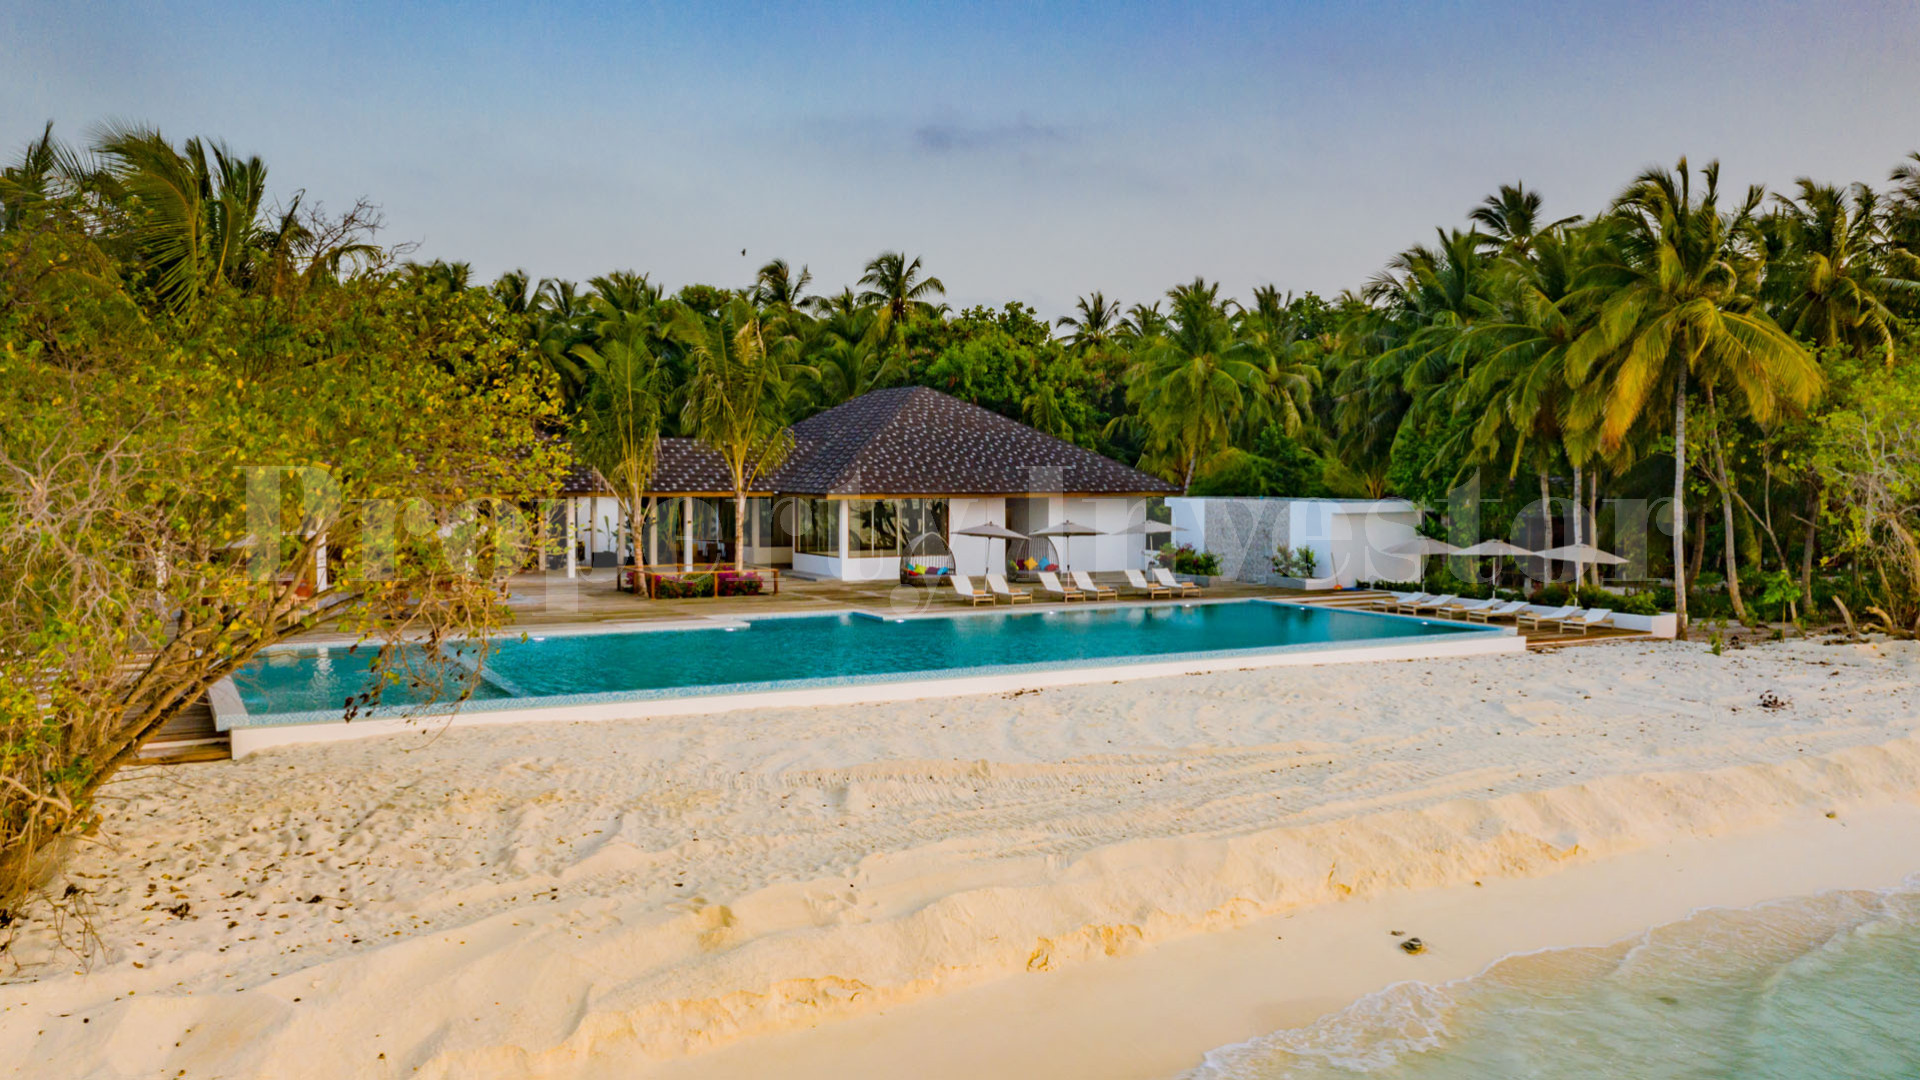 Продается роскошный островной отель на 60 вилл на Мальдивах